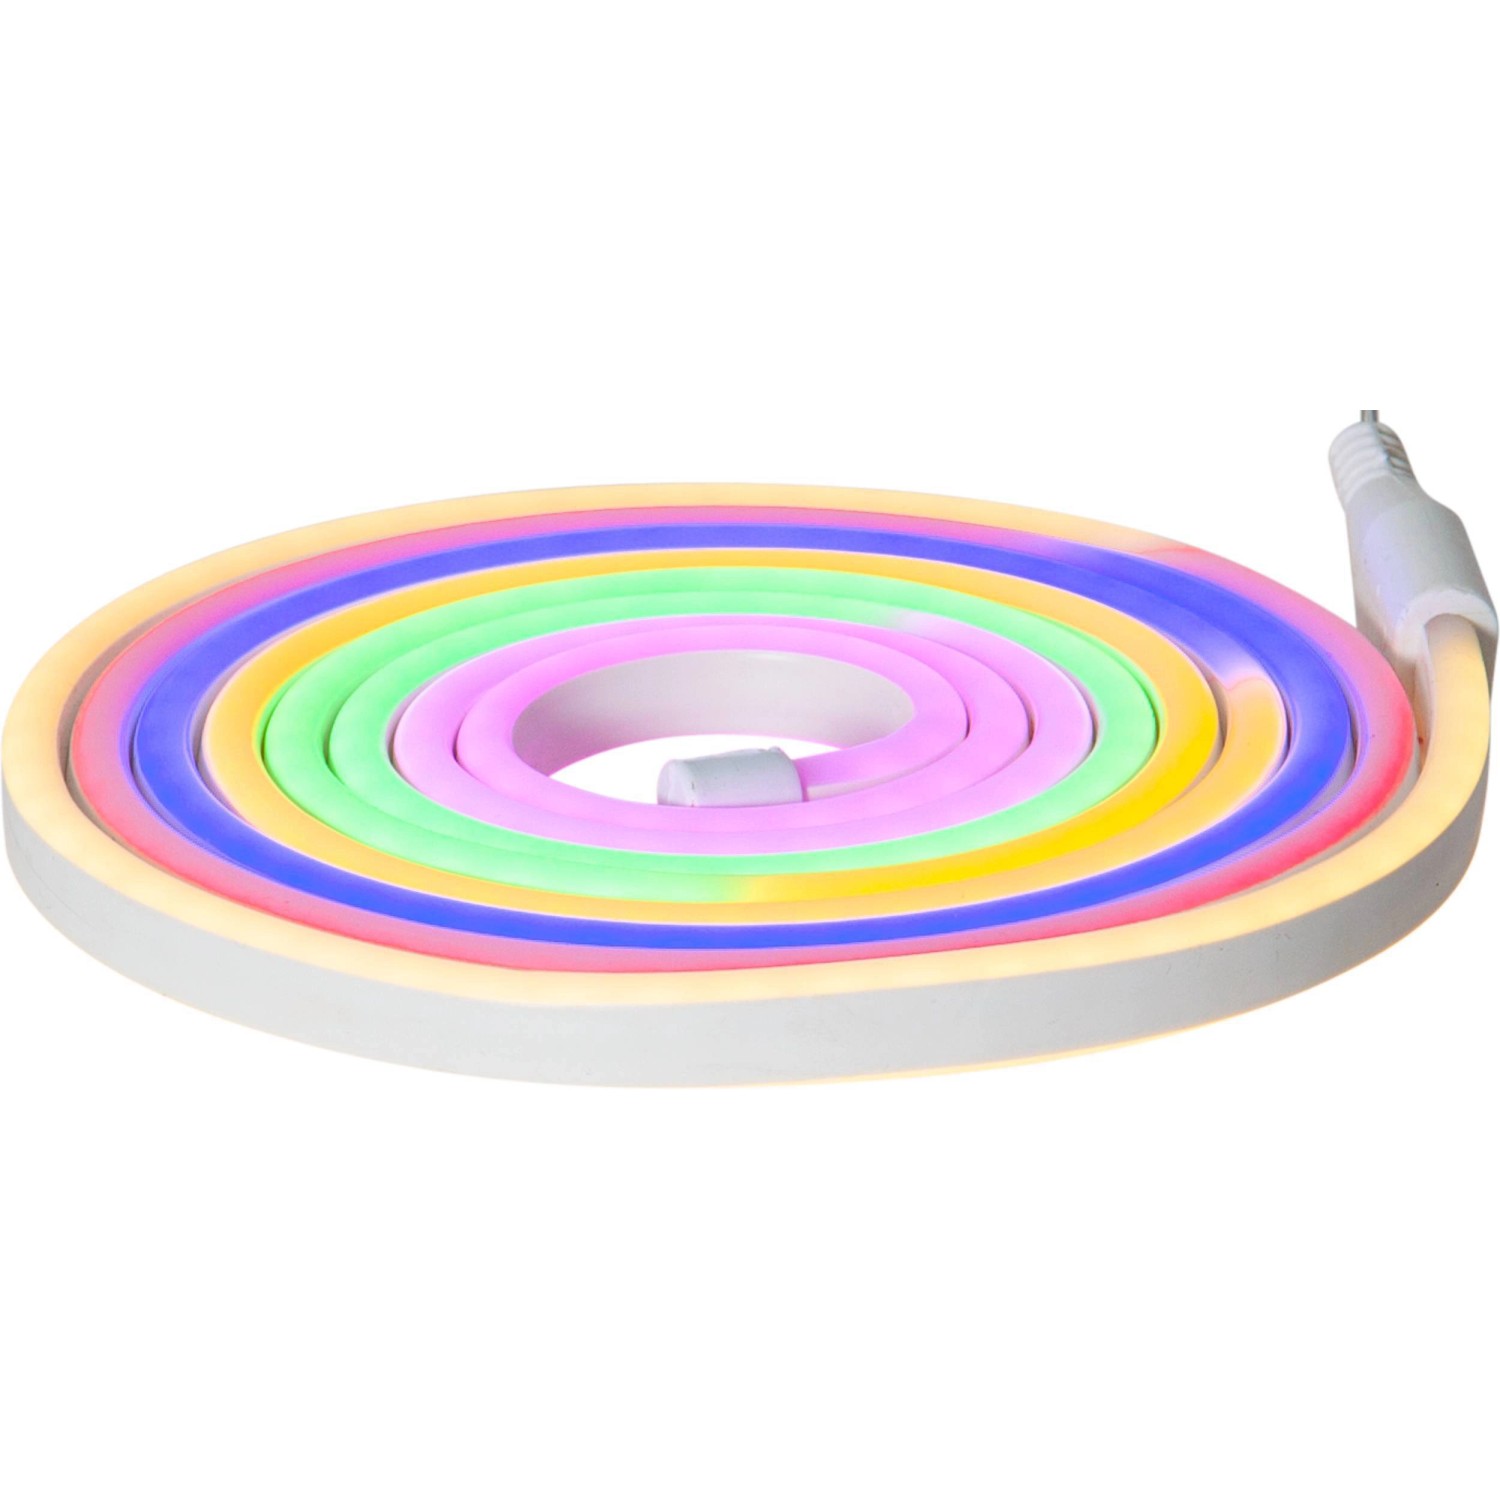 Eglo LED-Leuchtband Flatneonled Bunt 300 cm